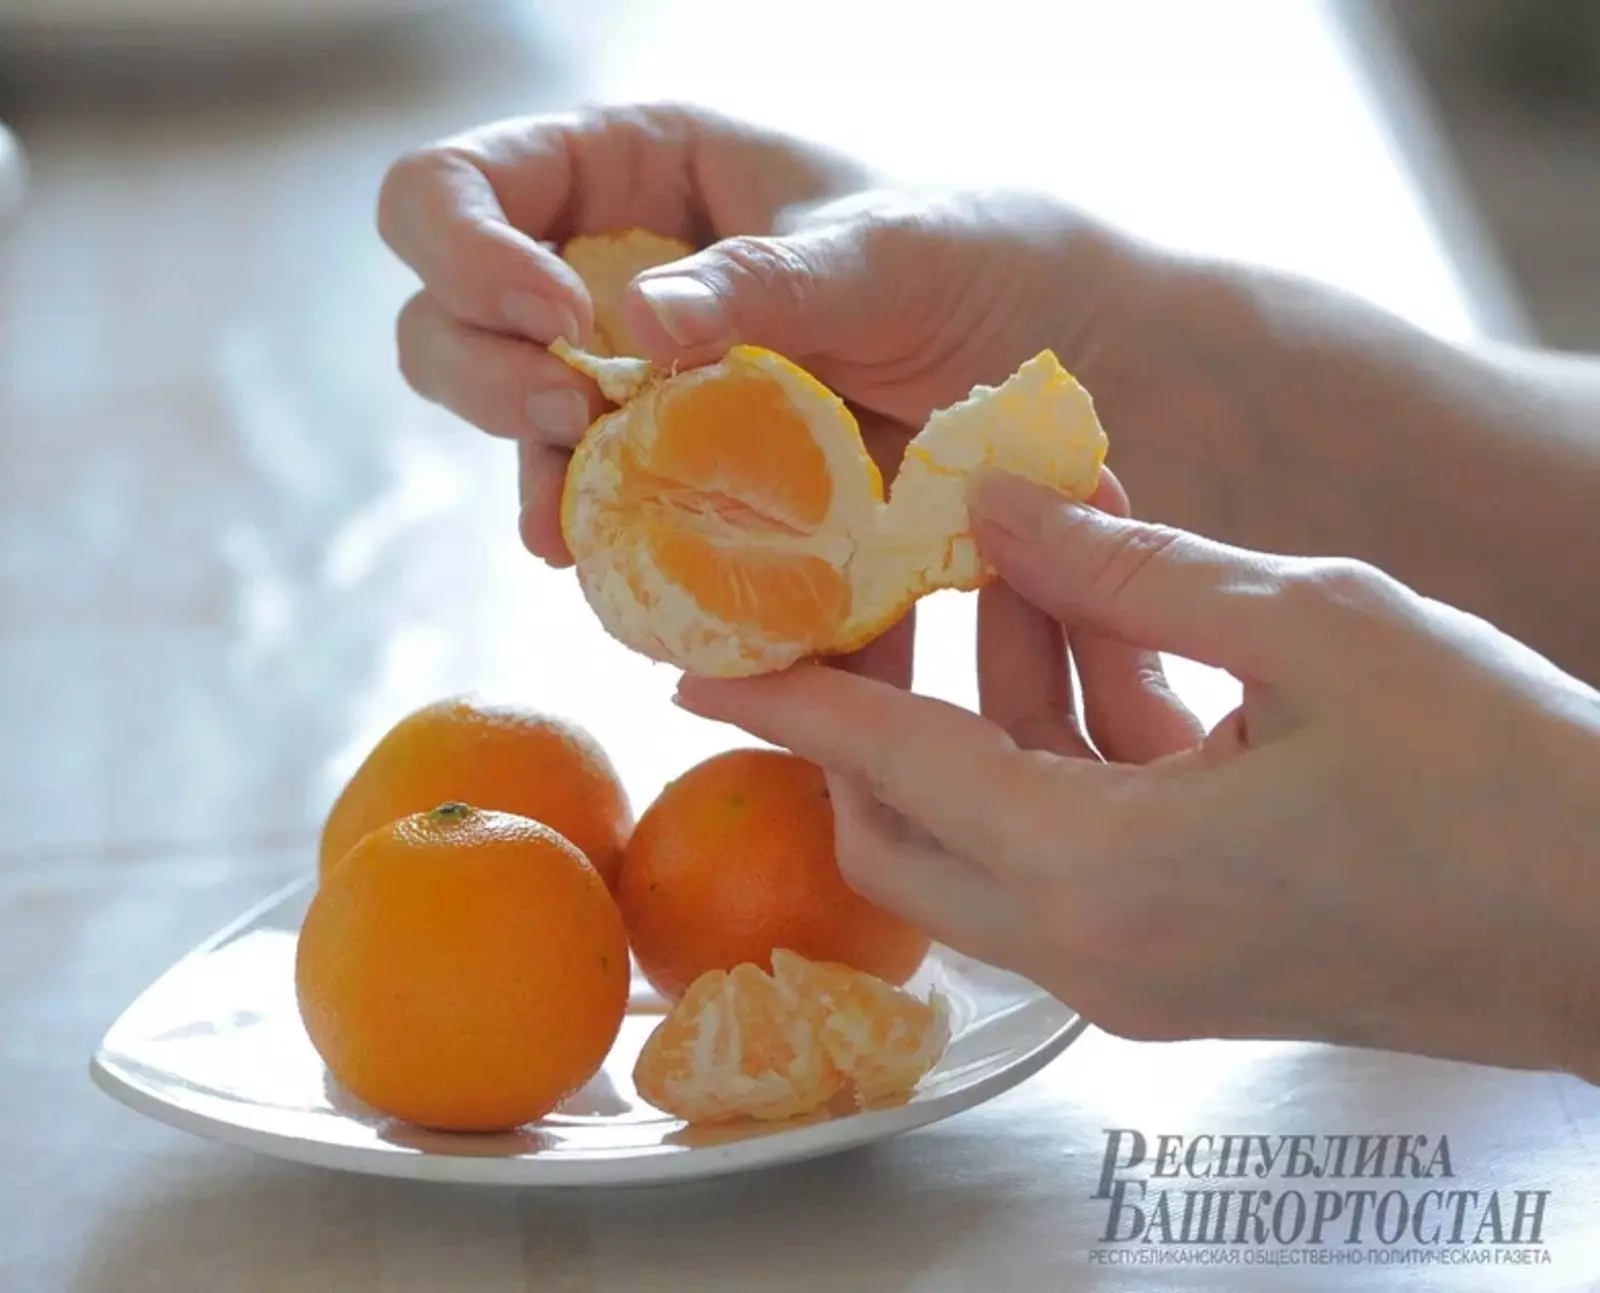 В Уфе объявили сбор апельсинов для детей-сирот